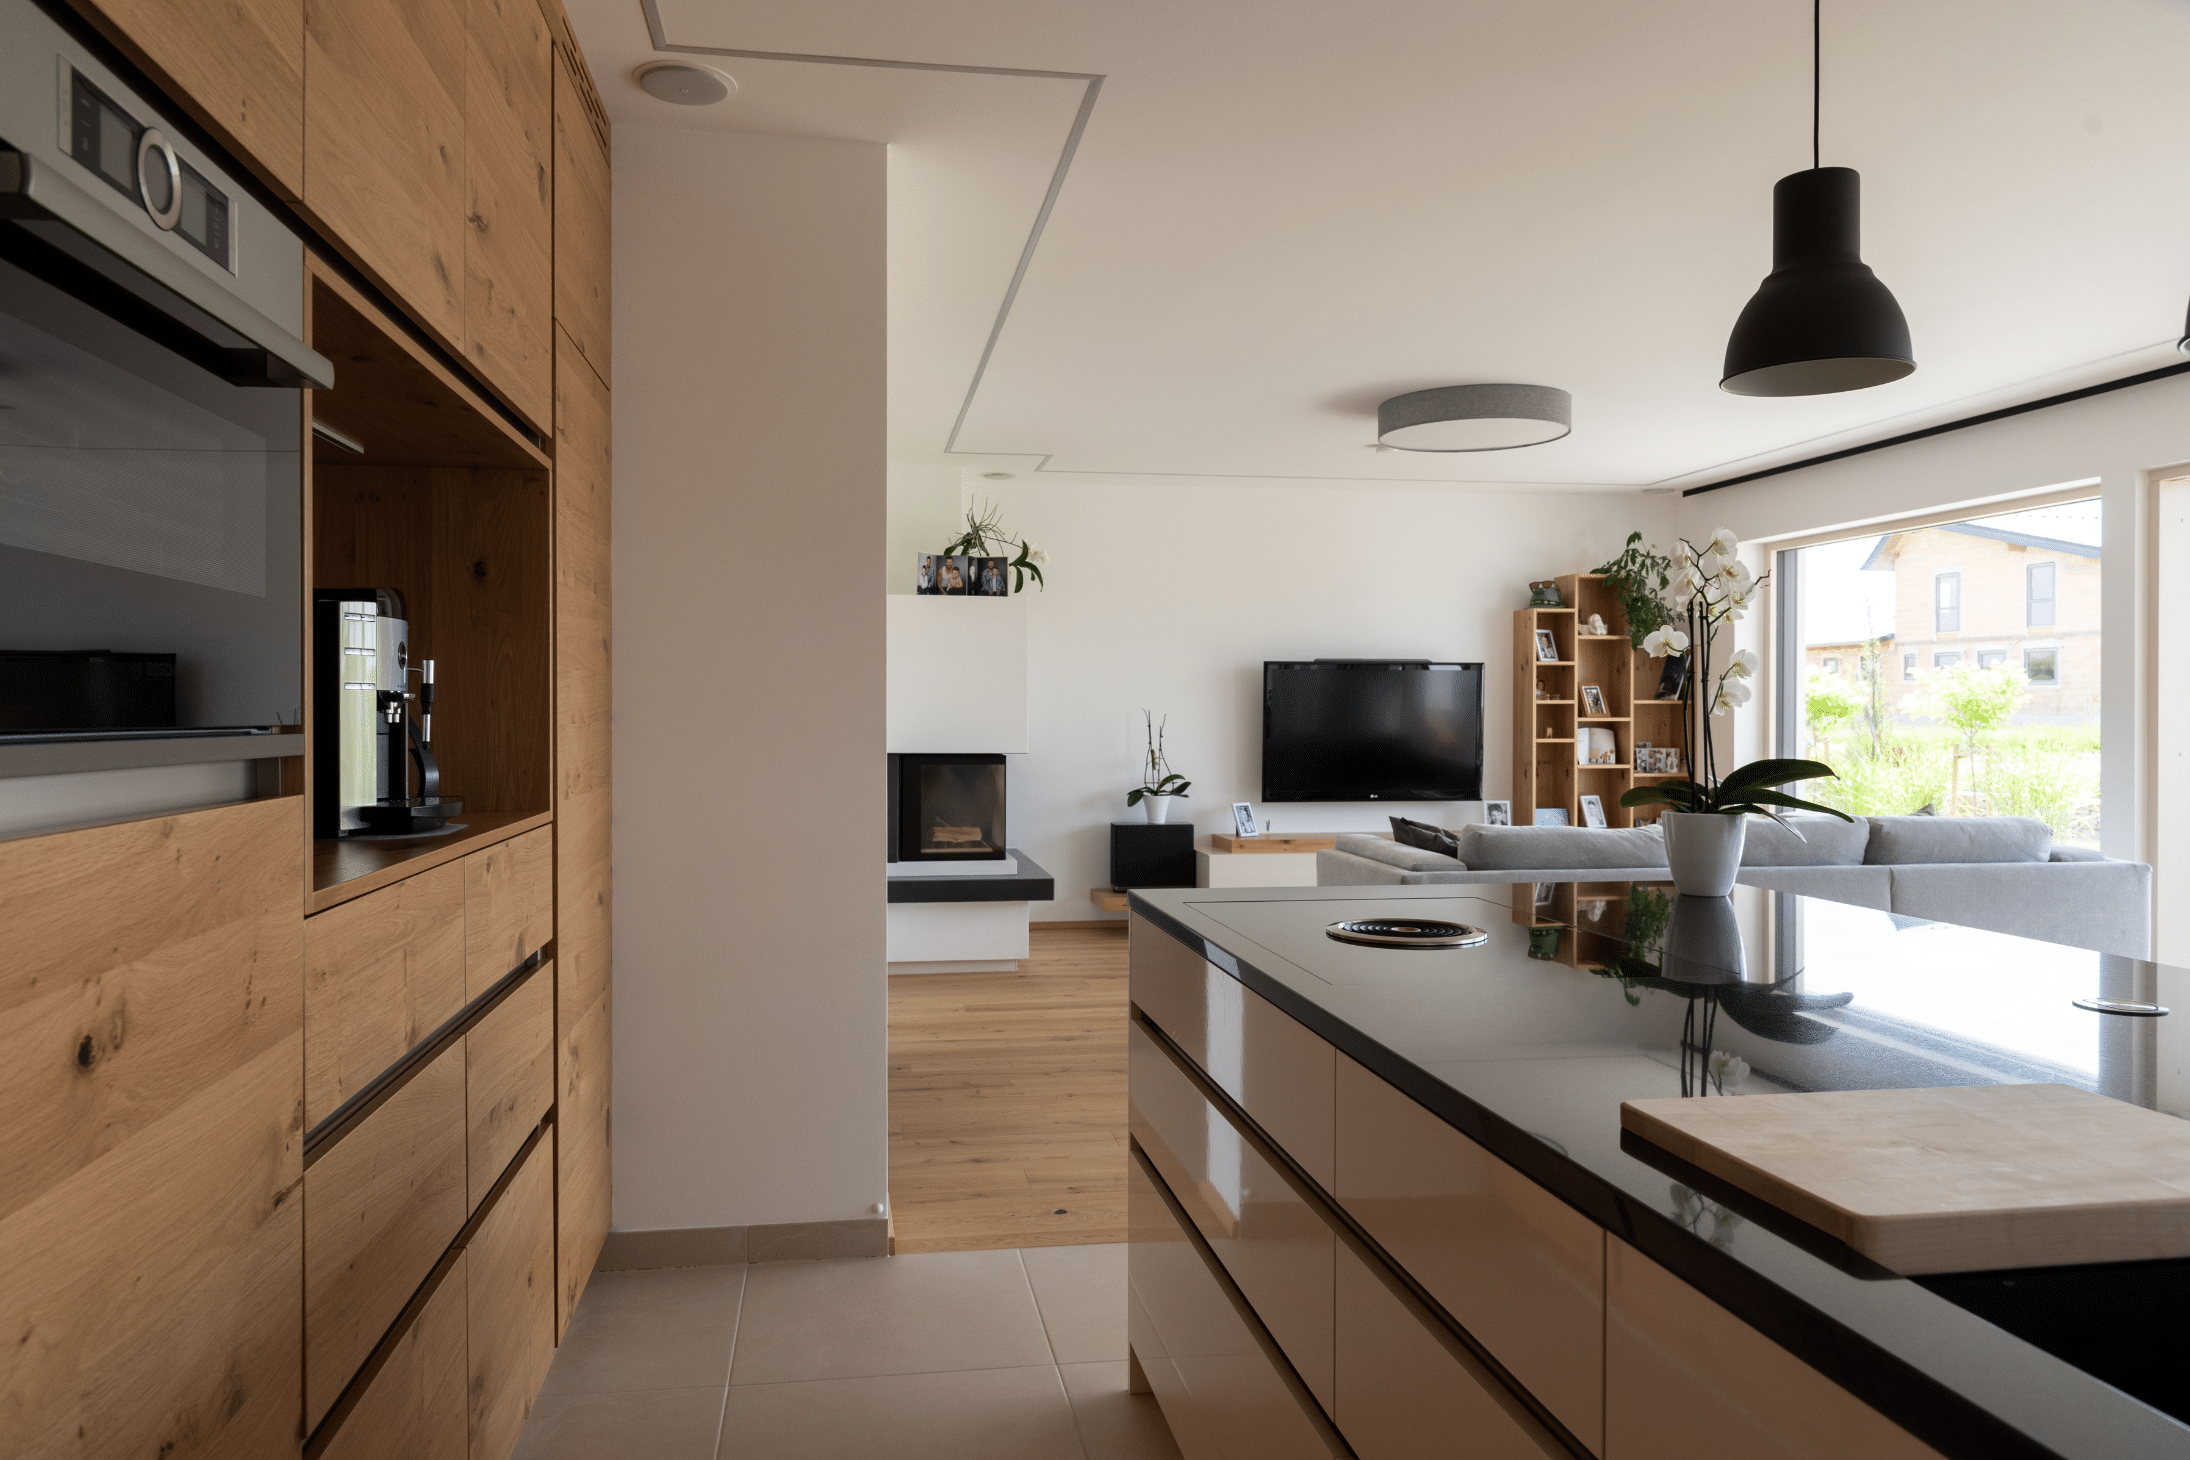 Hartl Haus zeigt eine Küche aus Holz mit weißen Schranktüren, mehreren Elektrogeräten, einer schwarzen von der Decke hängenden Lampe und Terrassentür.